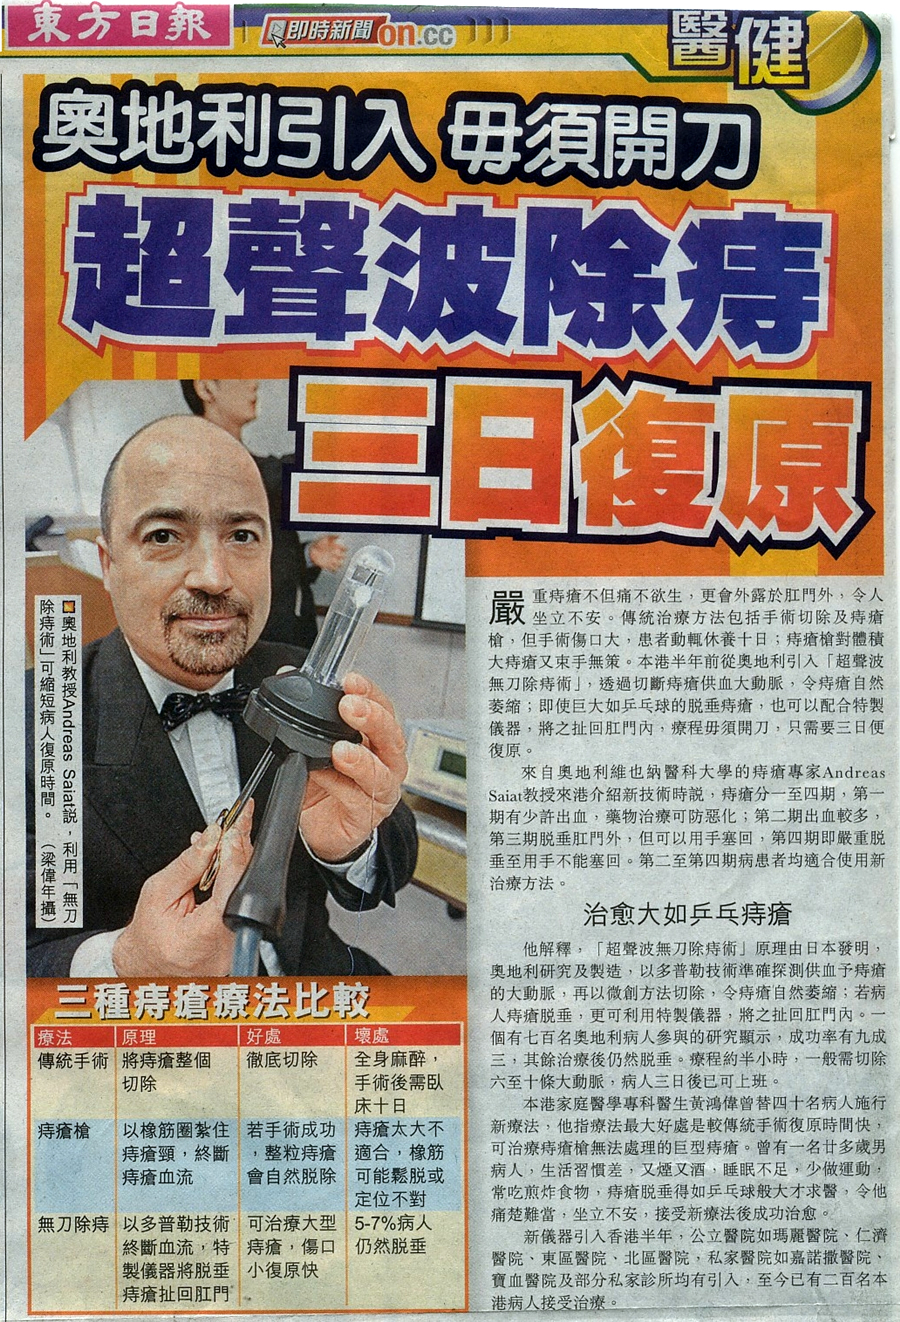 hong kong haemorrhoid centre newspaper7